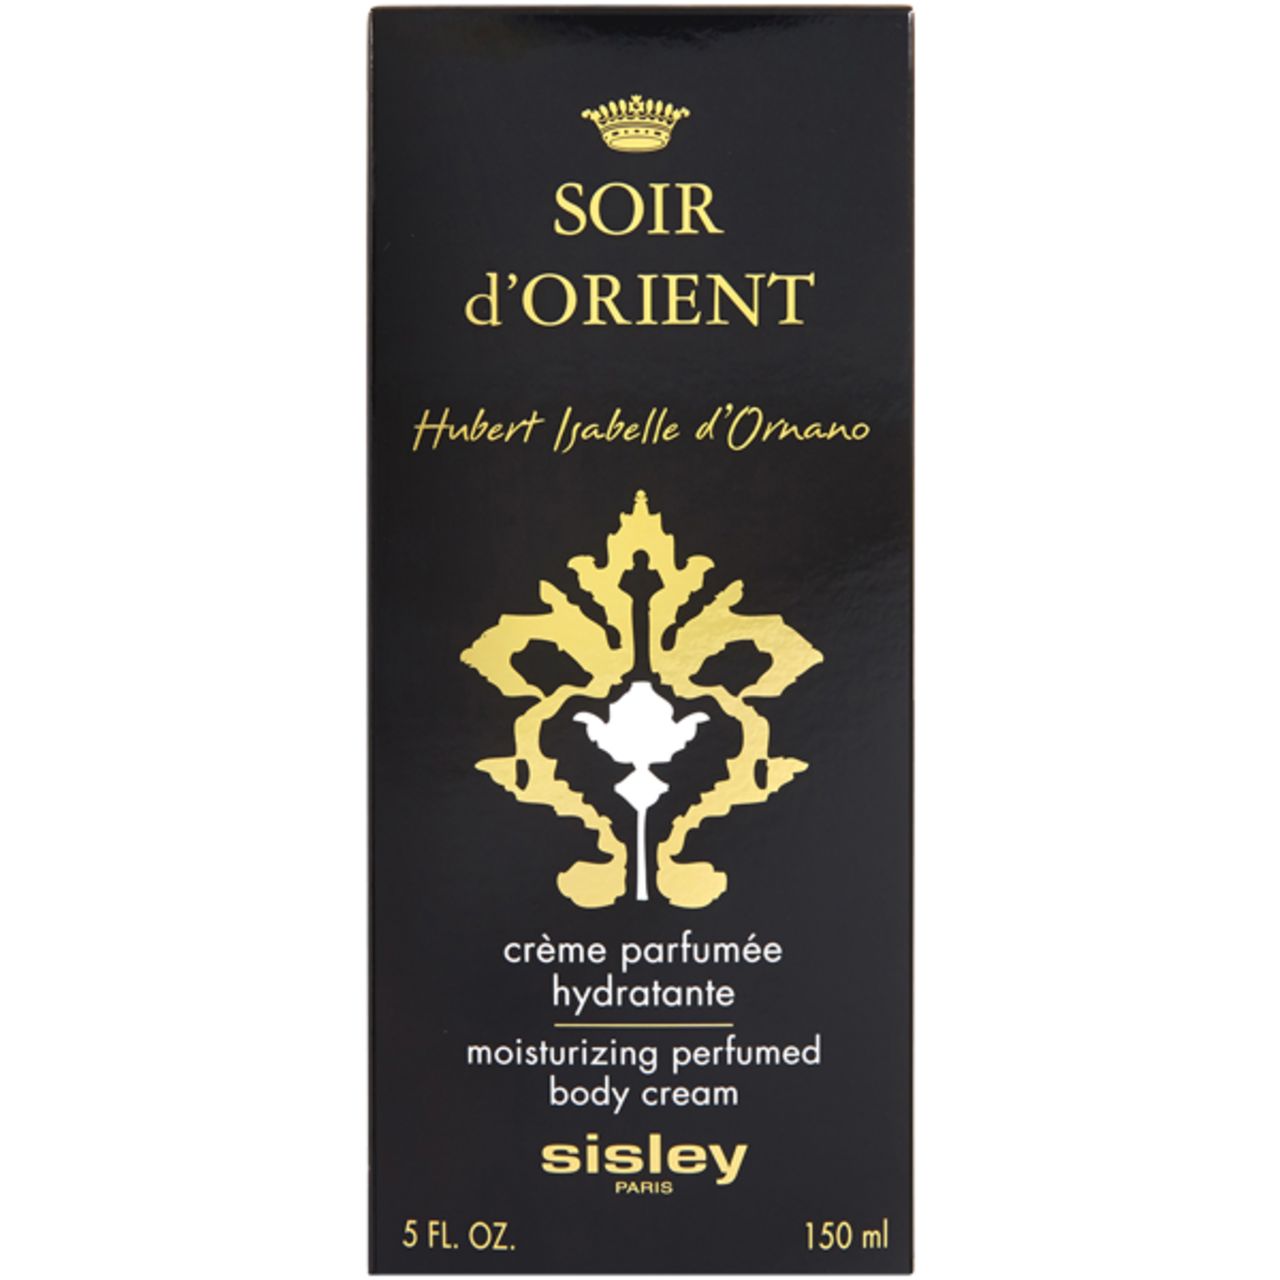 Sisley, Soir d'Orient Crème Parfumée Hydratante Corps